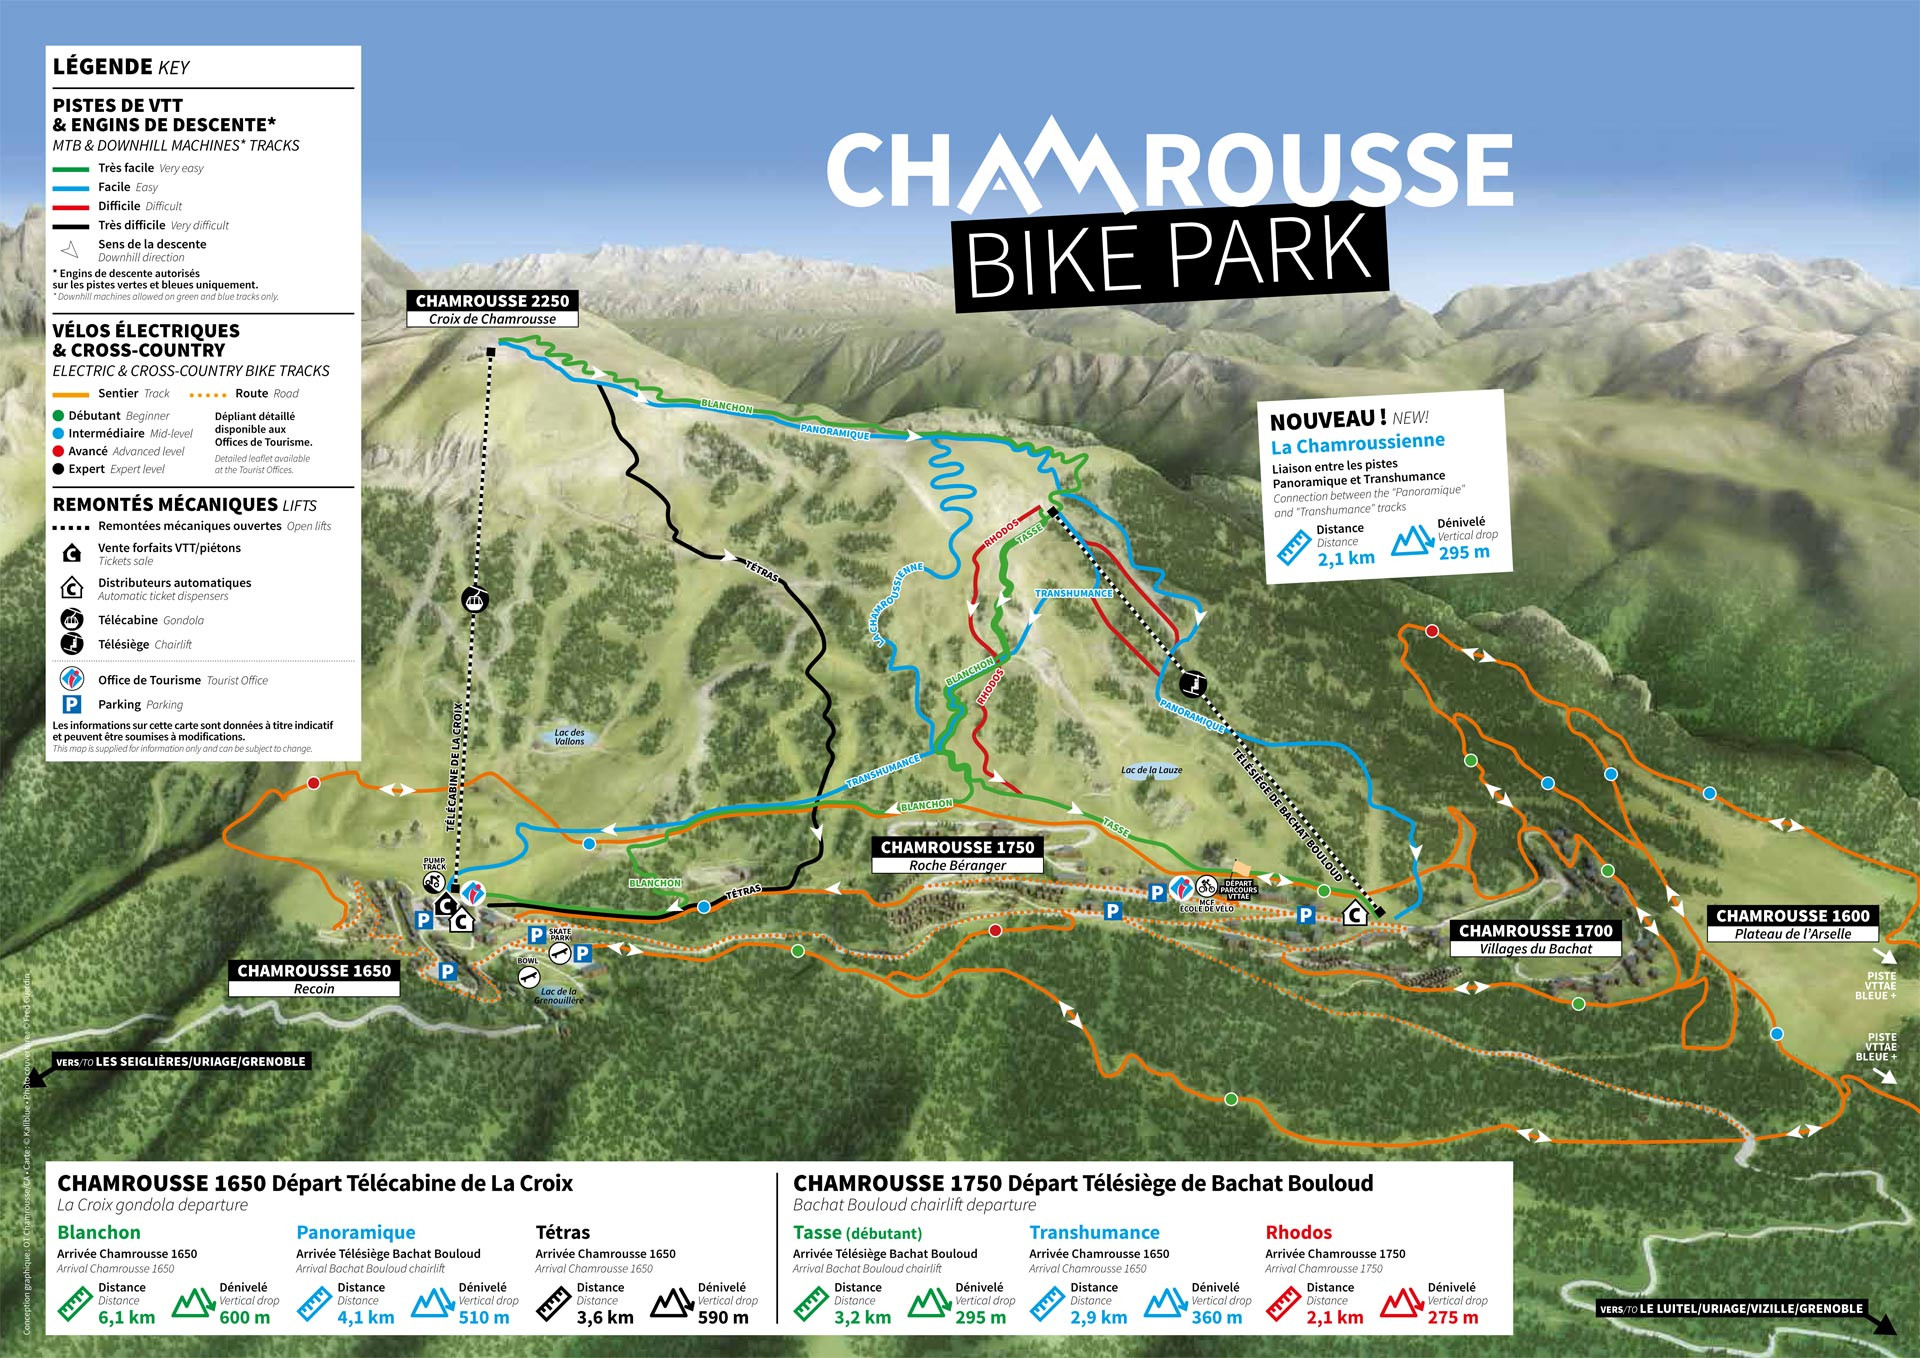 Chamrousse plan vtt vélo engin descente bike park été 2022 station montagne grenoble isère alpes france